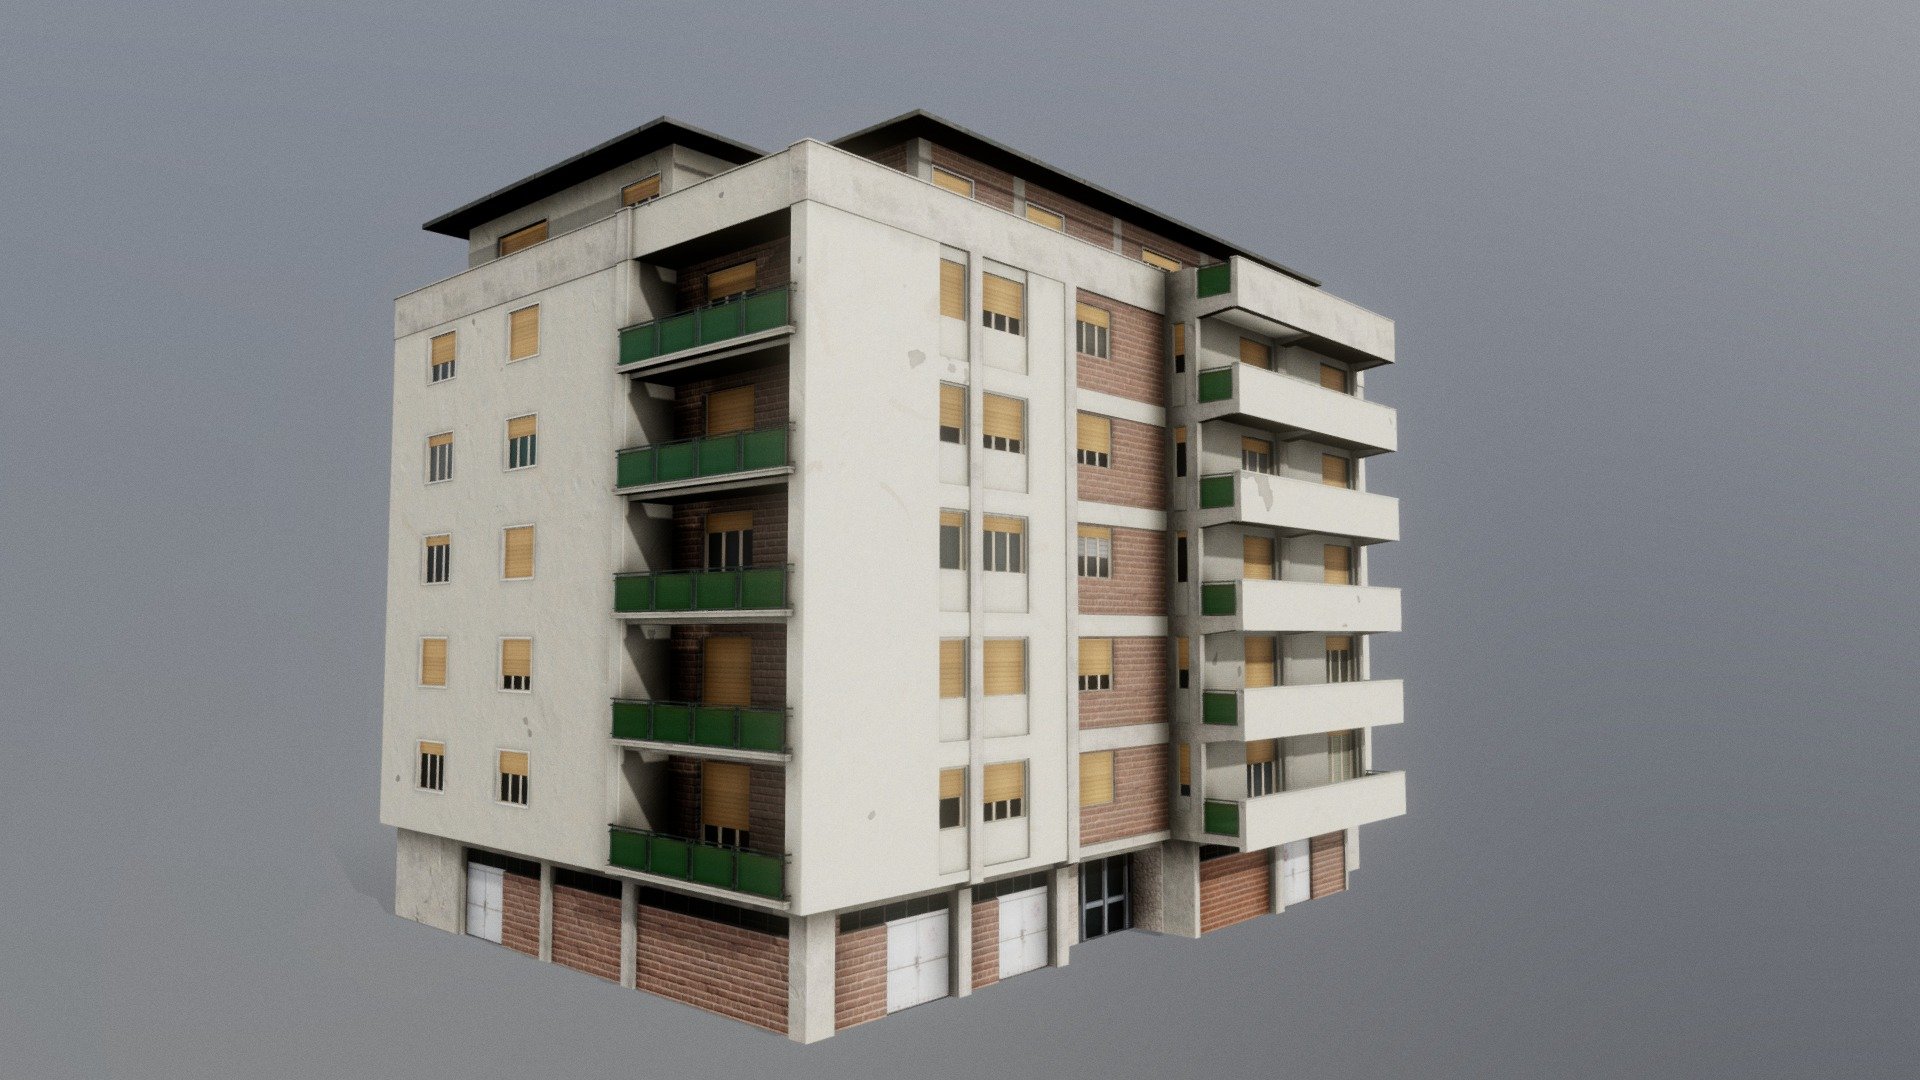 Italian Apartment 3 - 3D model by Wikiquik 3d model